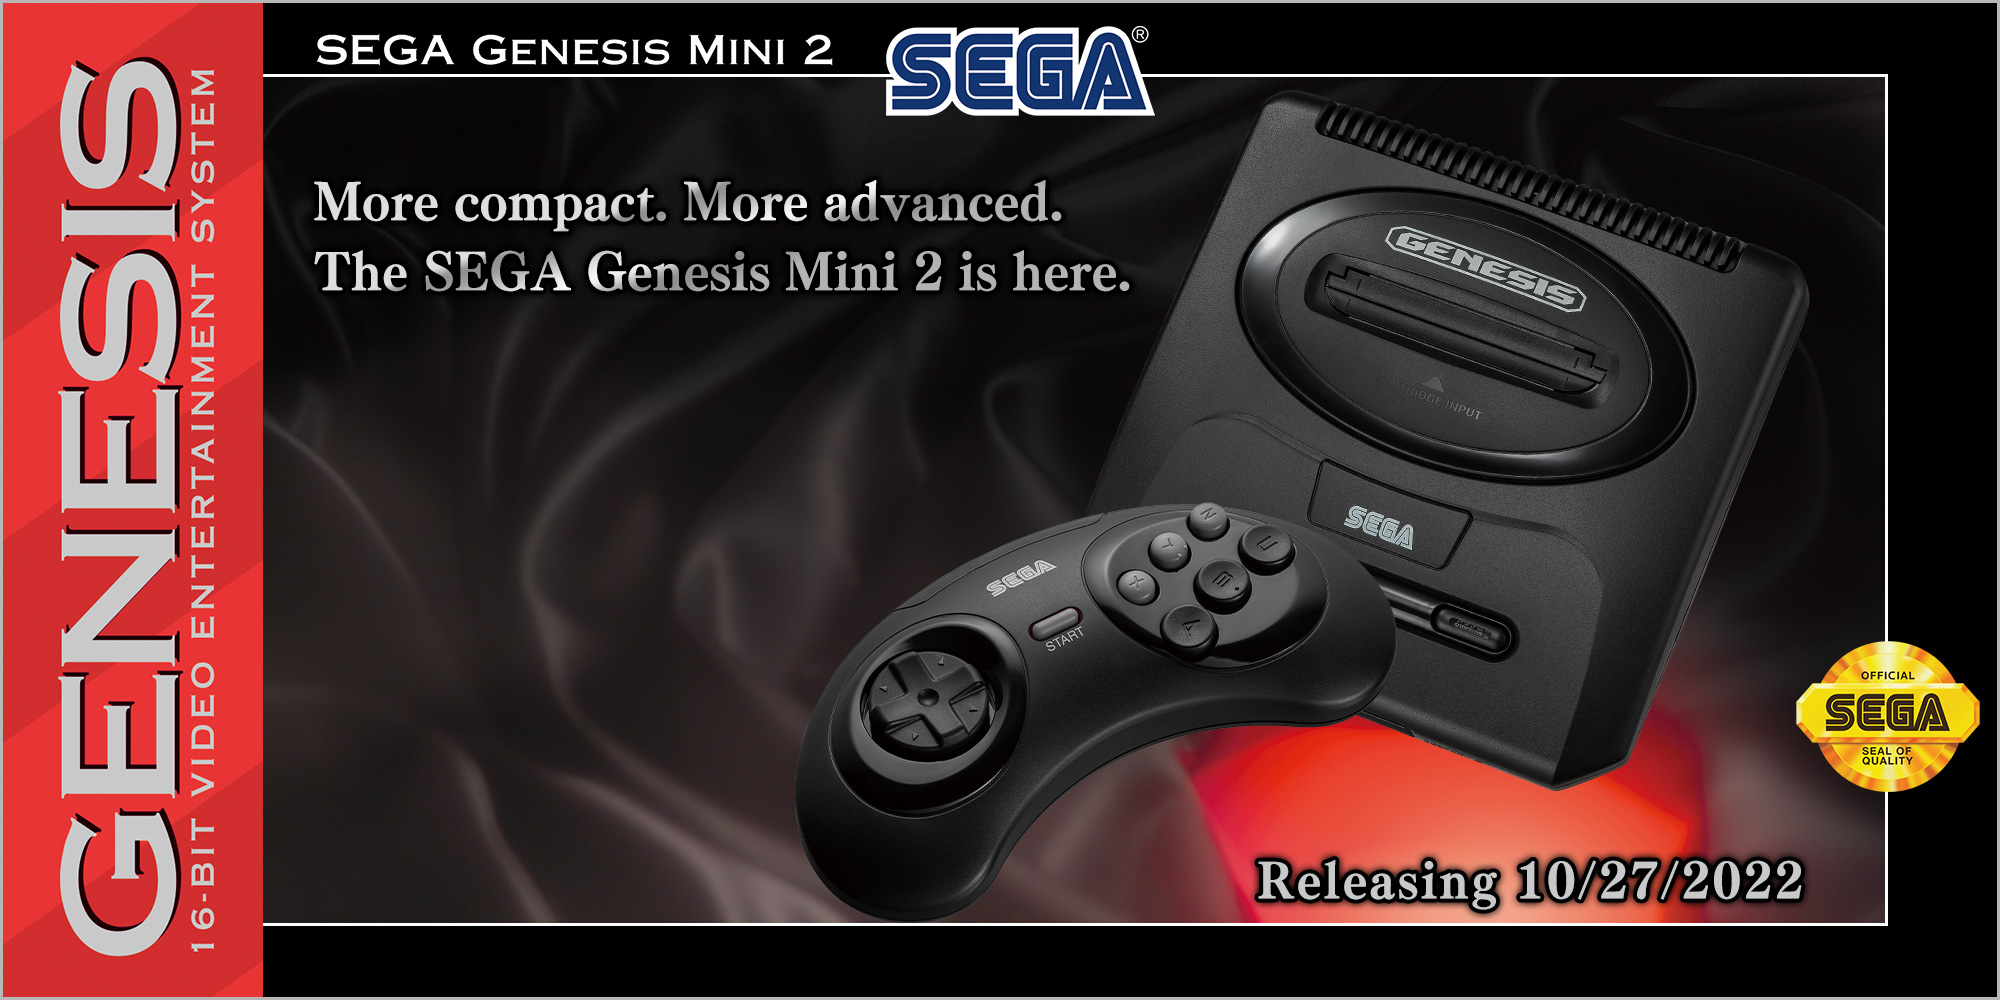 Sega Genesis Mini 2 coming in October with over 50 games